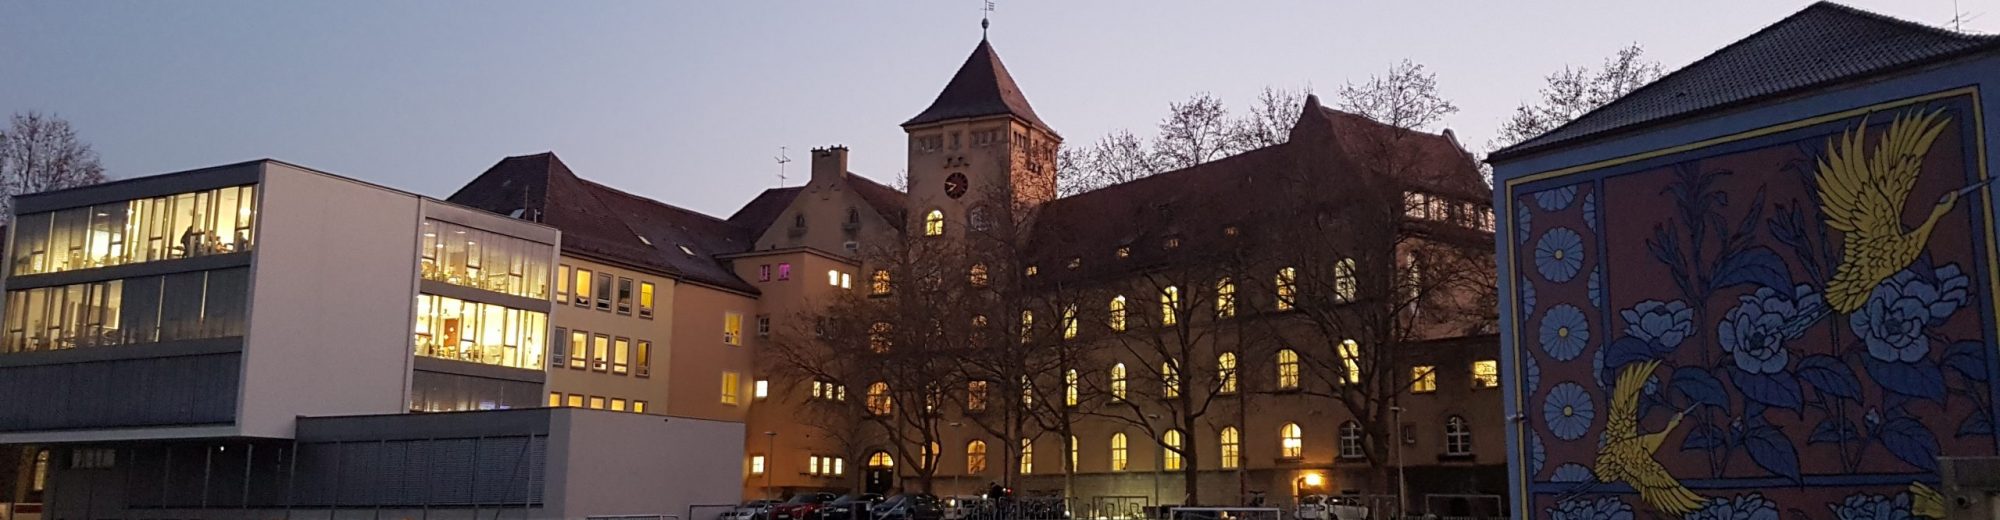 Siebold-Gymnasium Würzburg